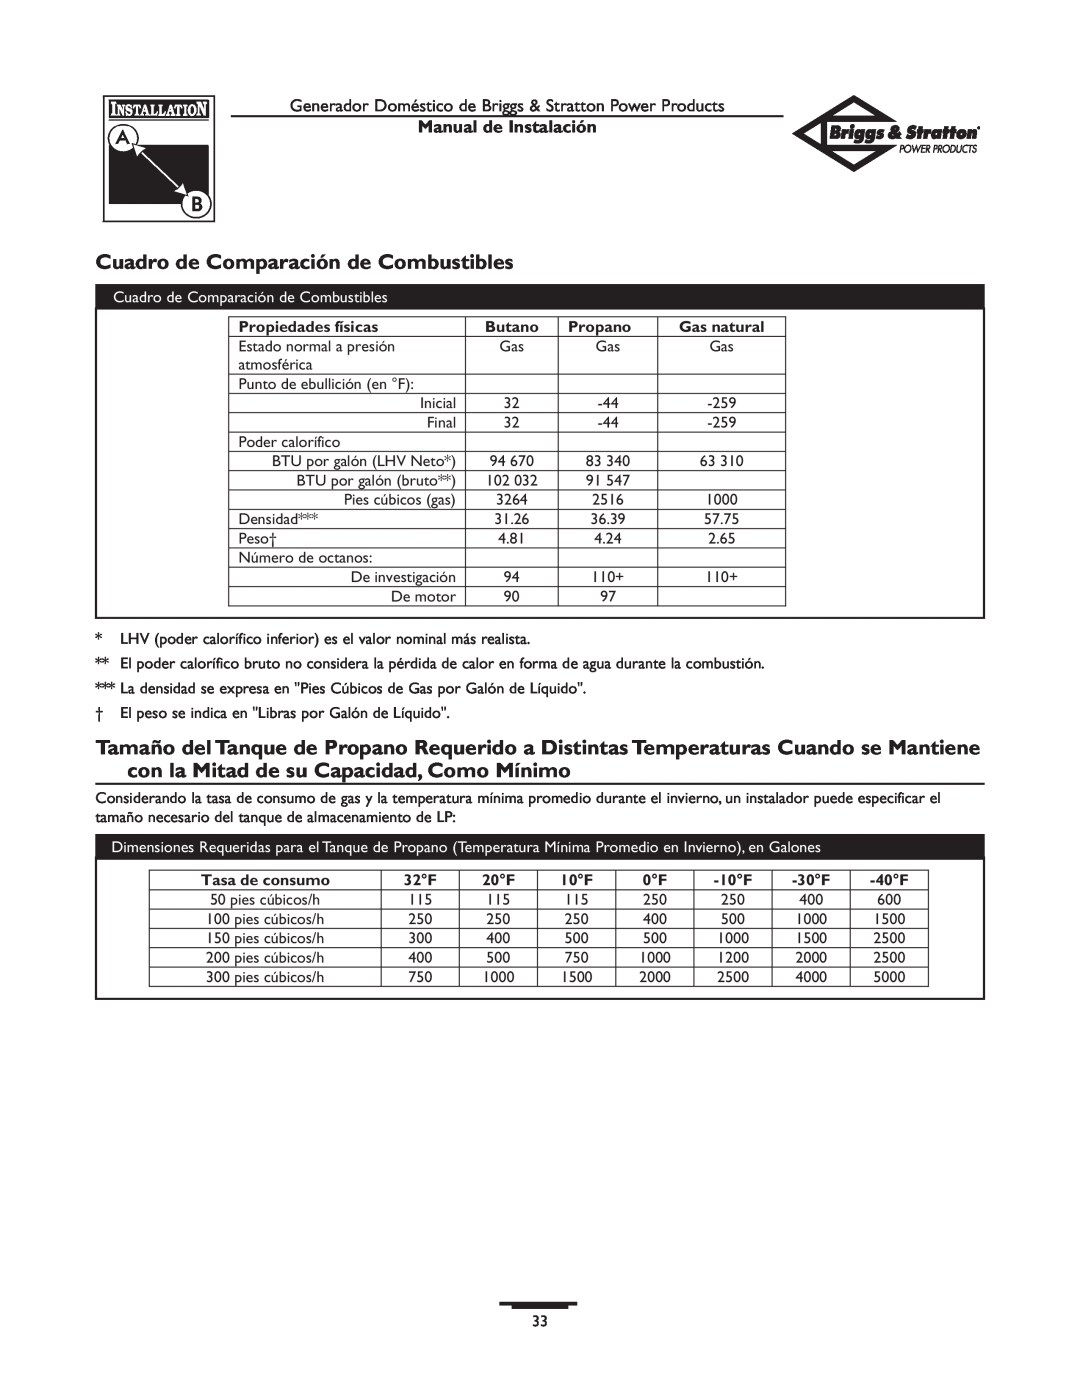 Briggs & Stratton 01938-0 manual Cuadro de Comparación de Combustibles, Manual de Instalación, Propiedades físicas, Butano 